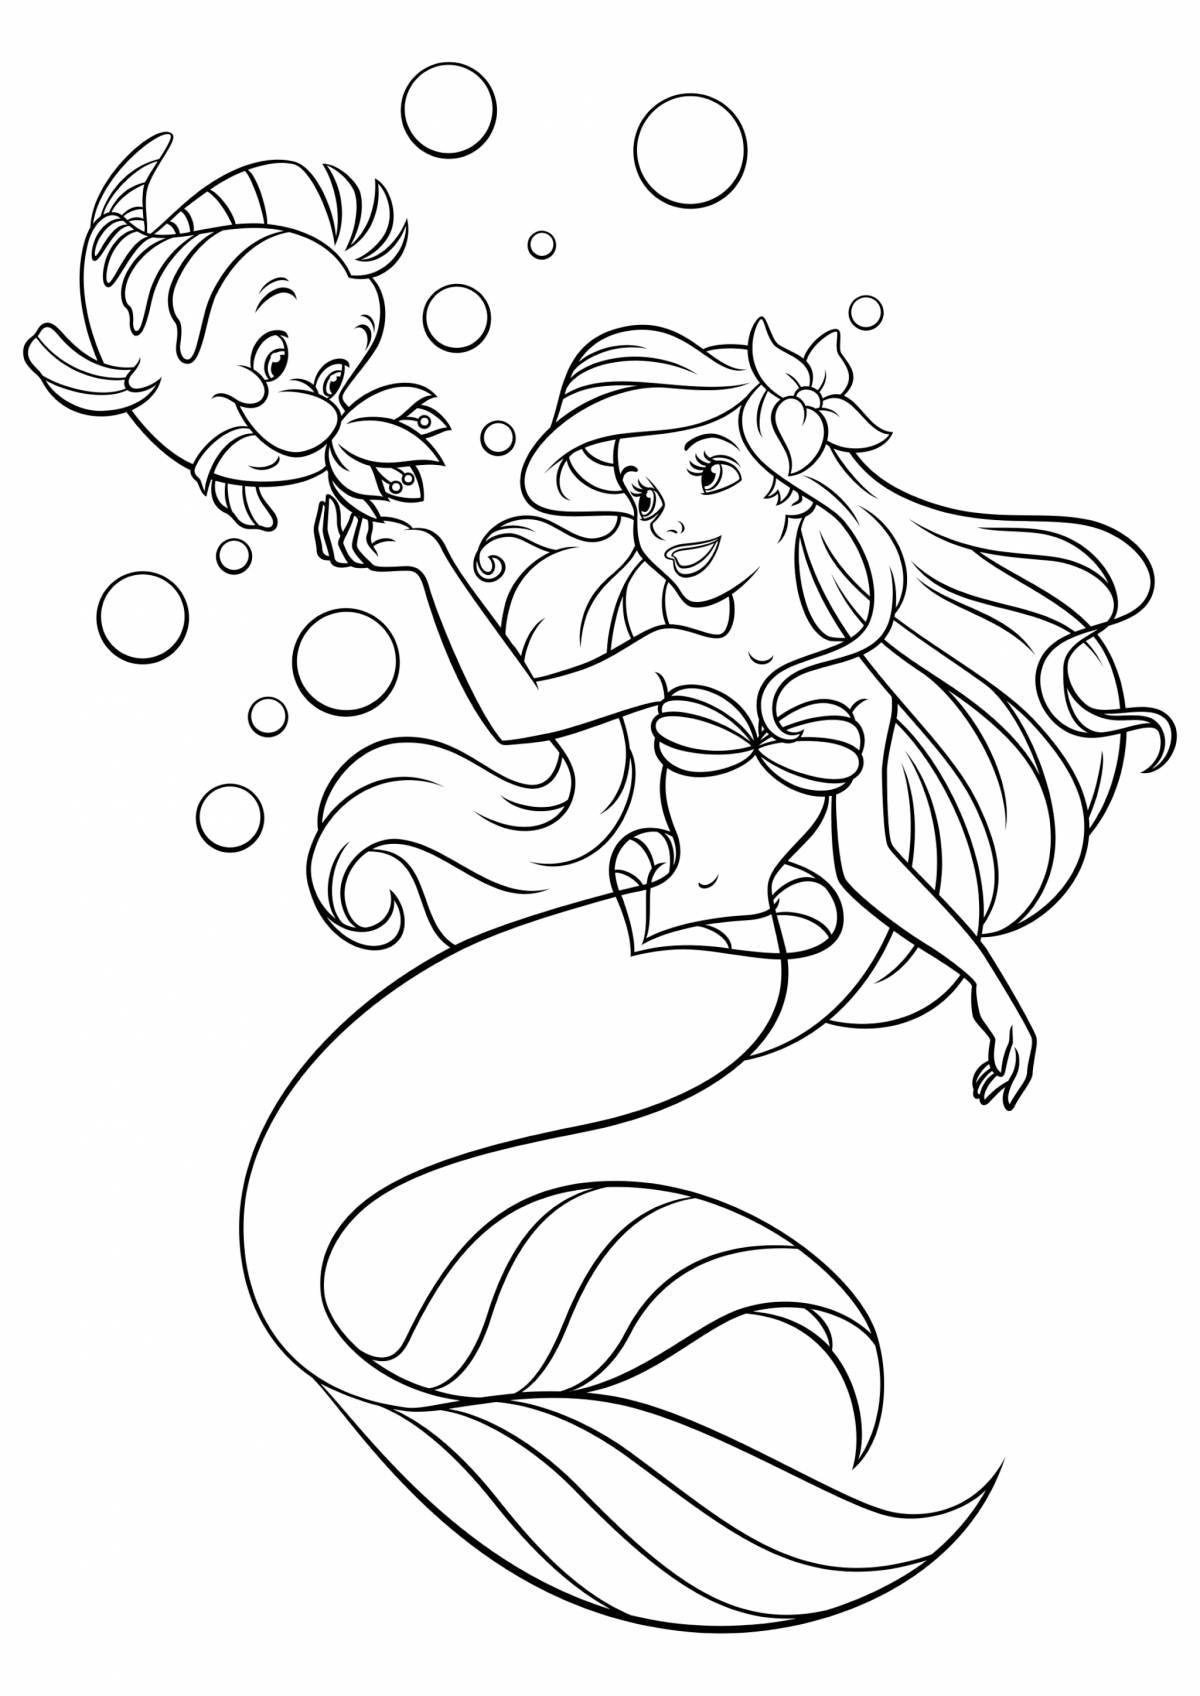 Elegant mermaid coloring book for girls